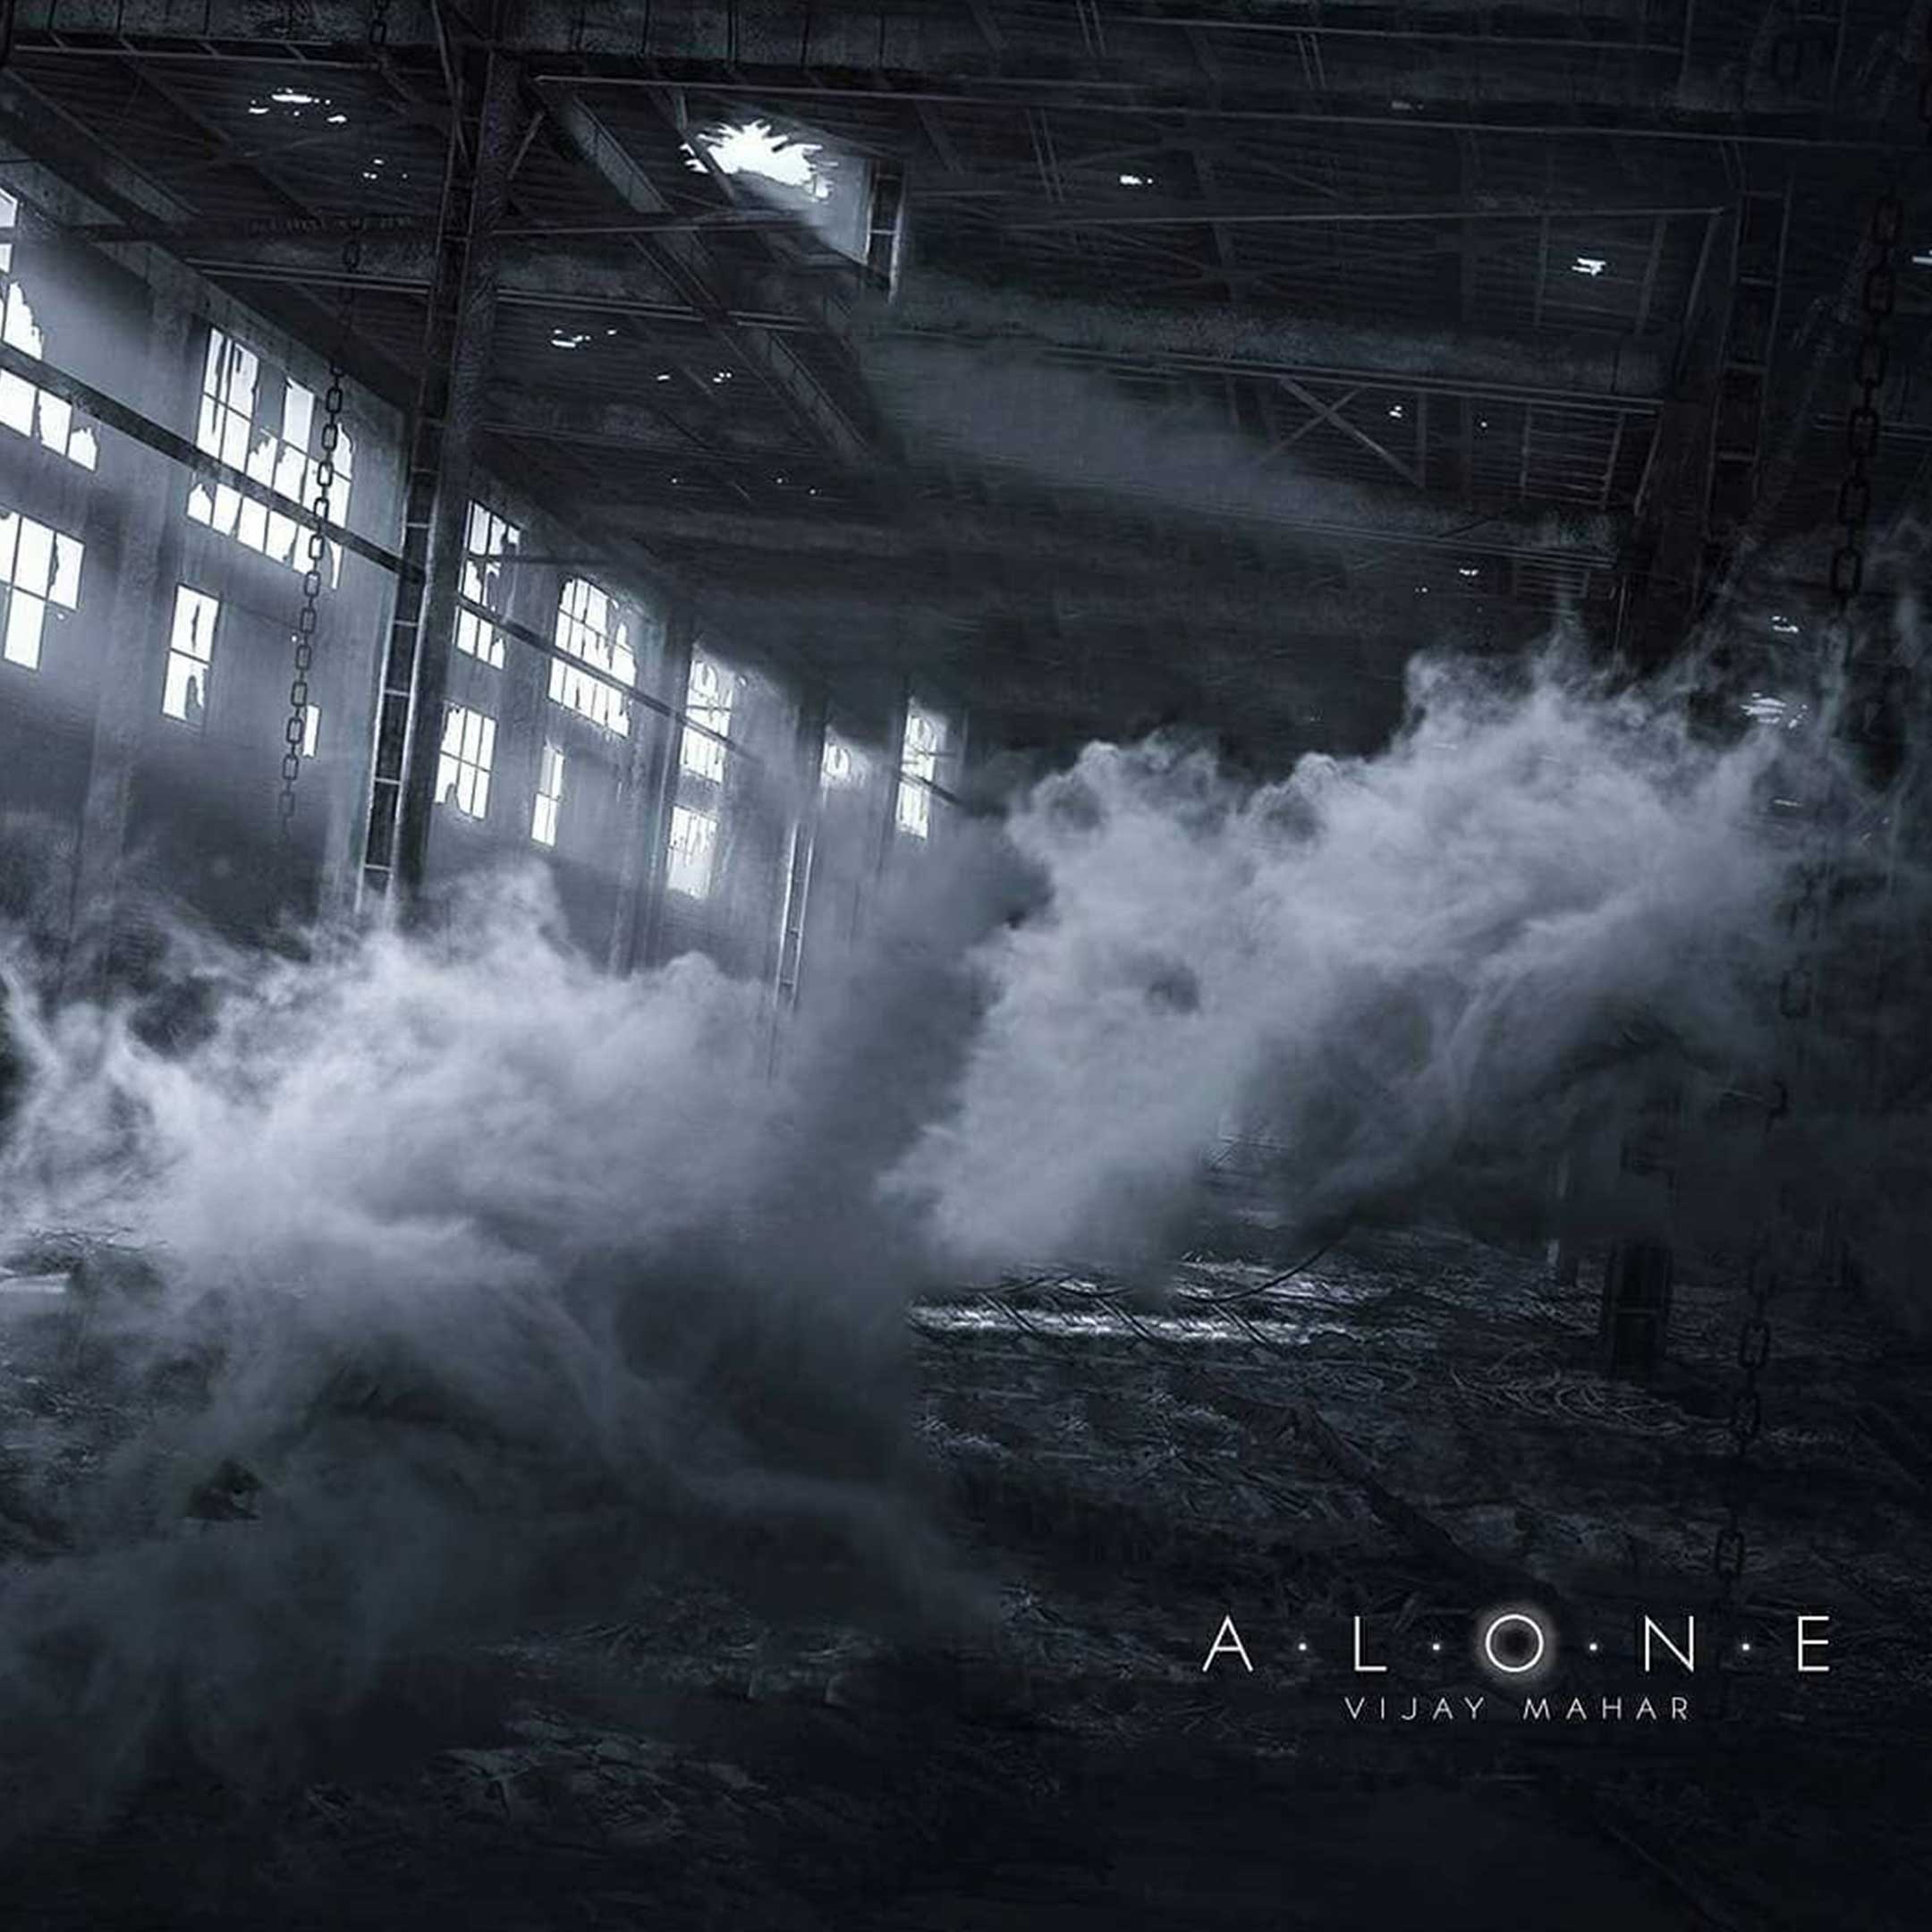 Alone Foggy Photo Editing Background Free Stock Image